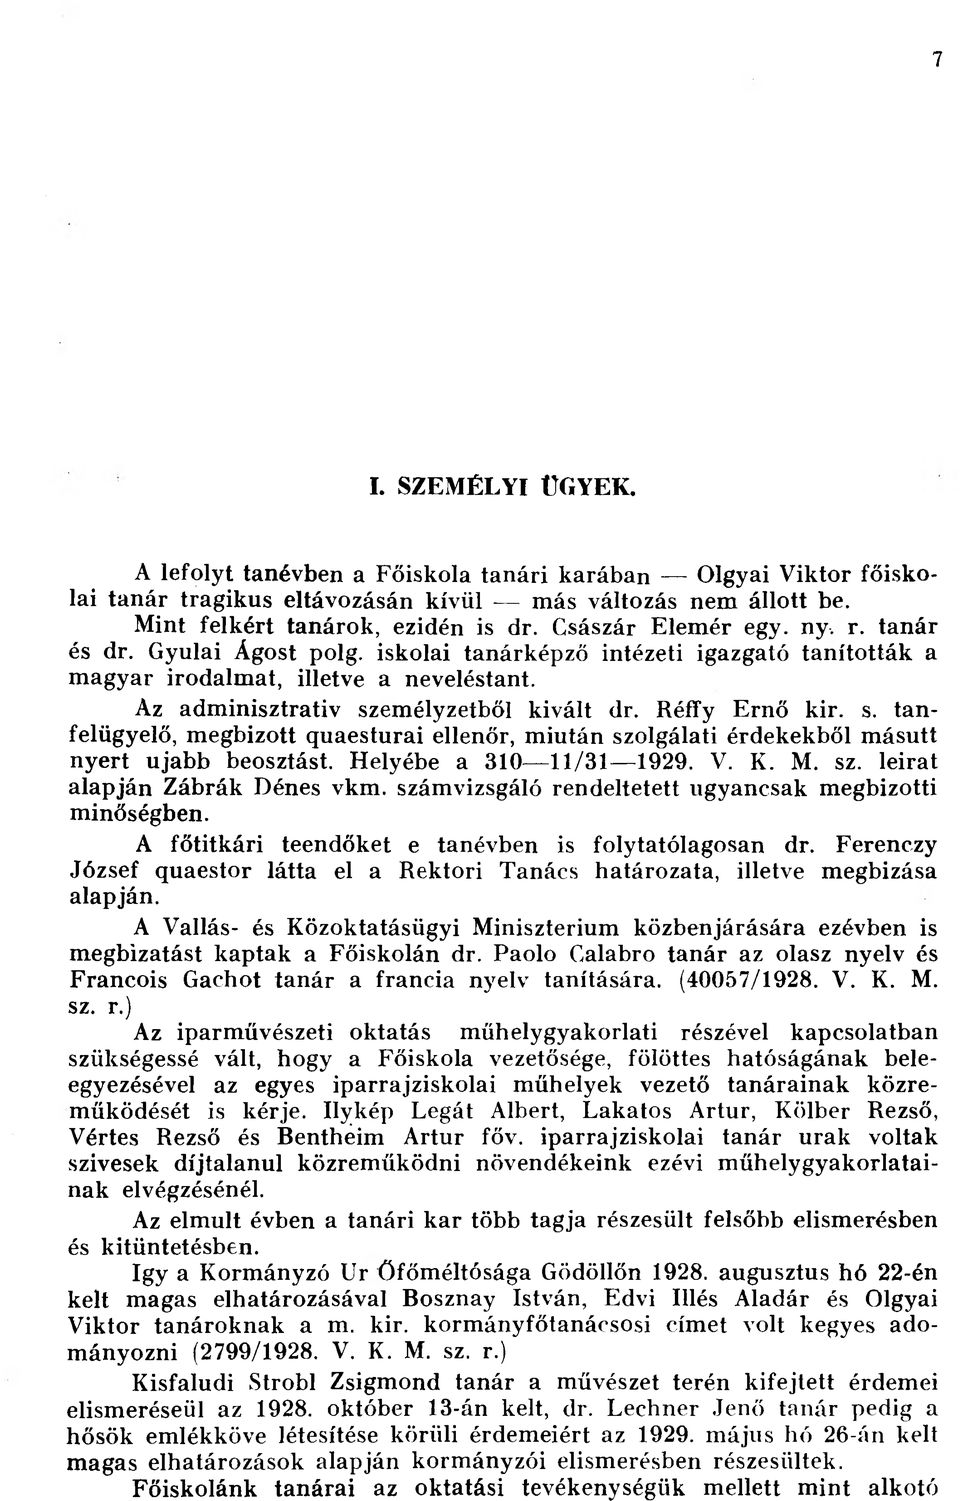 Réffy Ernő kir. s. tanfelügyelő, megbízott quaesturai ellenőr, miután szolgálati érdekekből másutt nyert ujabb beosztást. Helyébe a 310 11/31 1929. V. K. M. sz. leirat alapján Zábrák Dénes vkm.